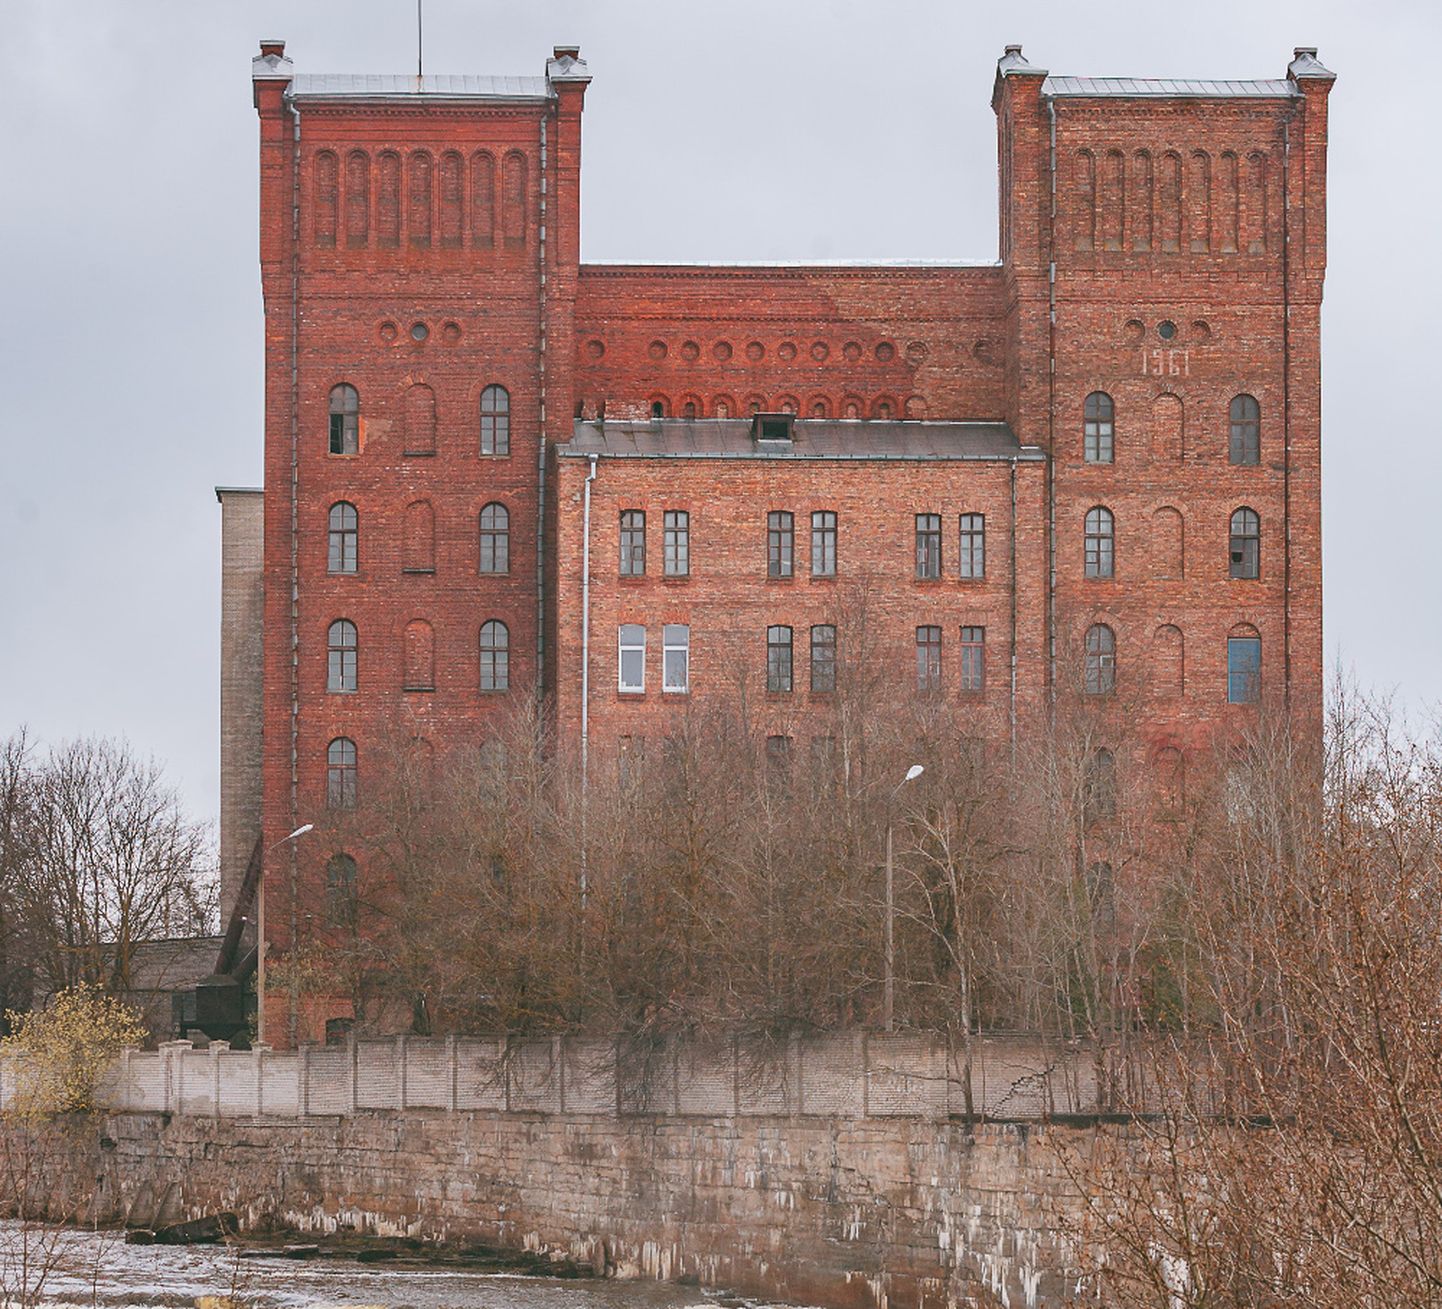 Narva Kreenholmi manufaktuuris saab osaleda kummituslikul töölismanifestatsioonil.
ILJA SMIRNOV